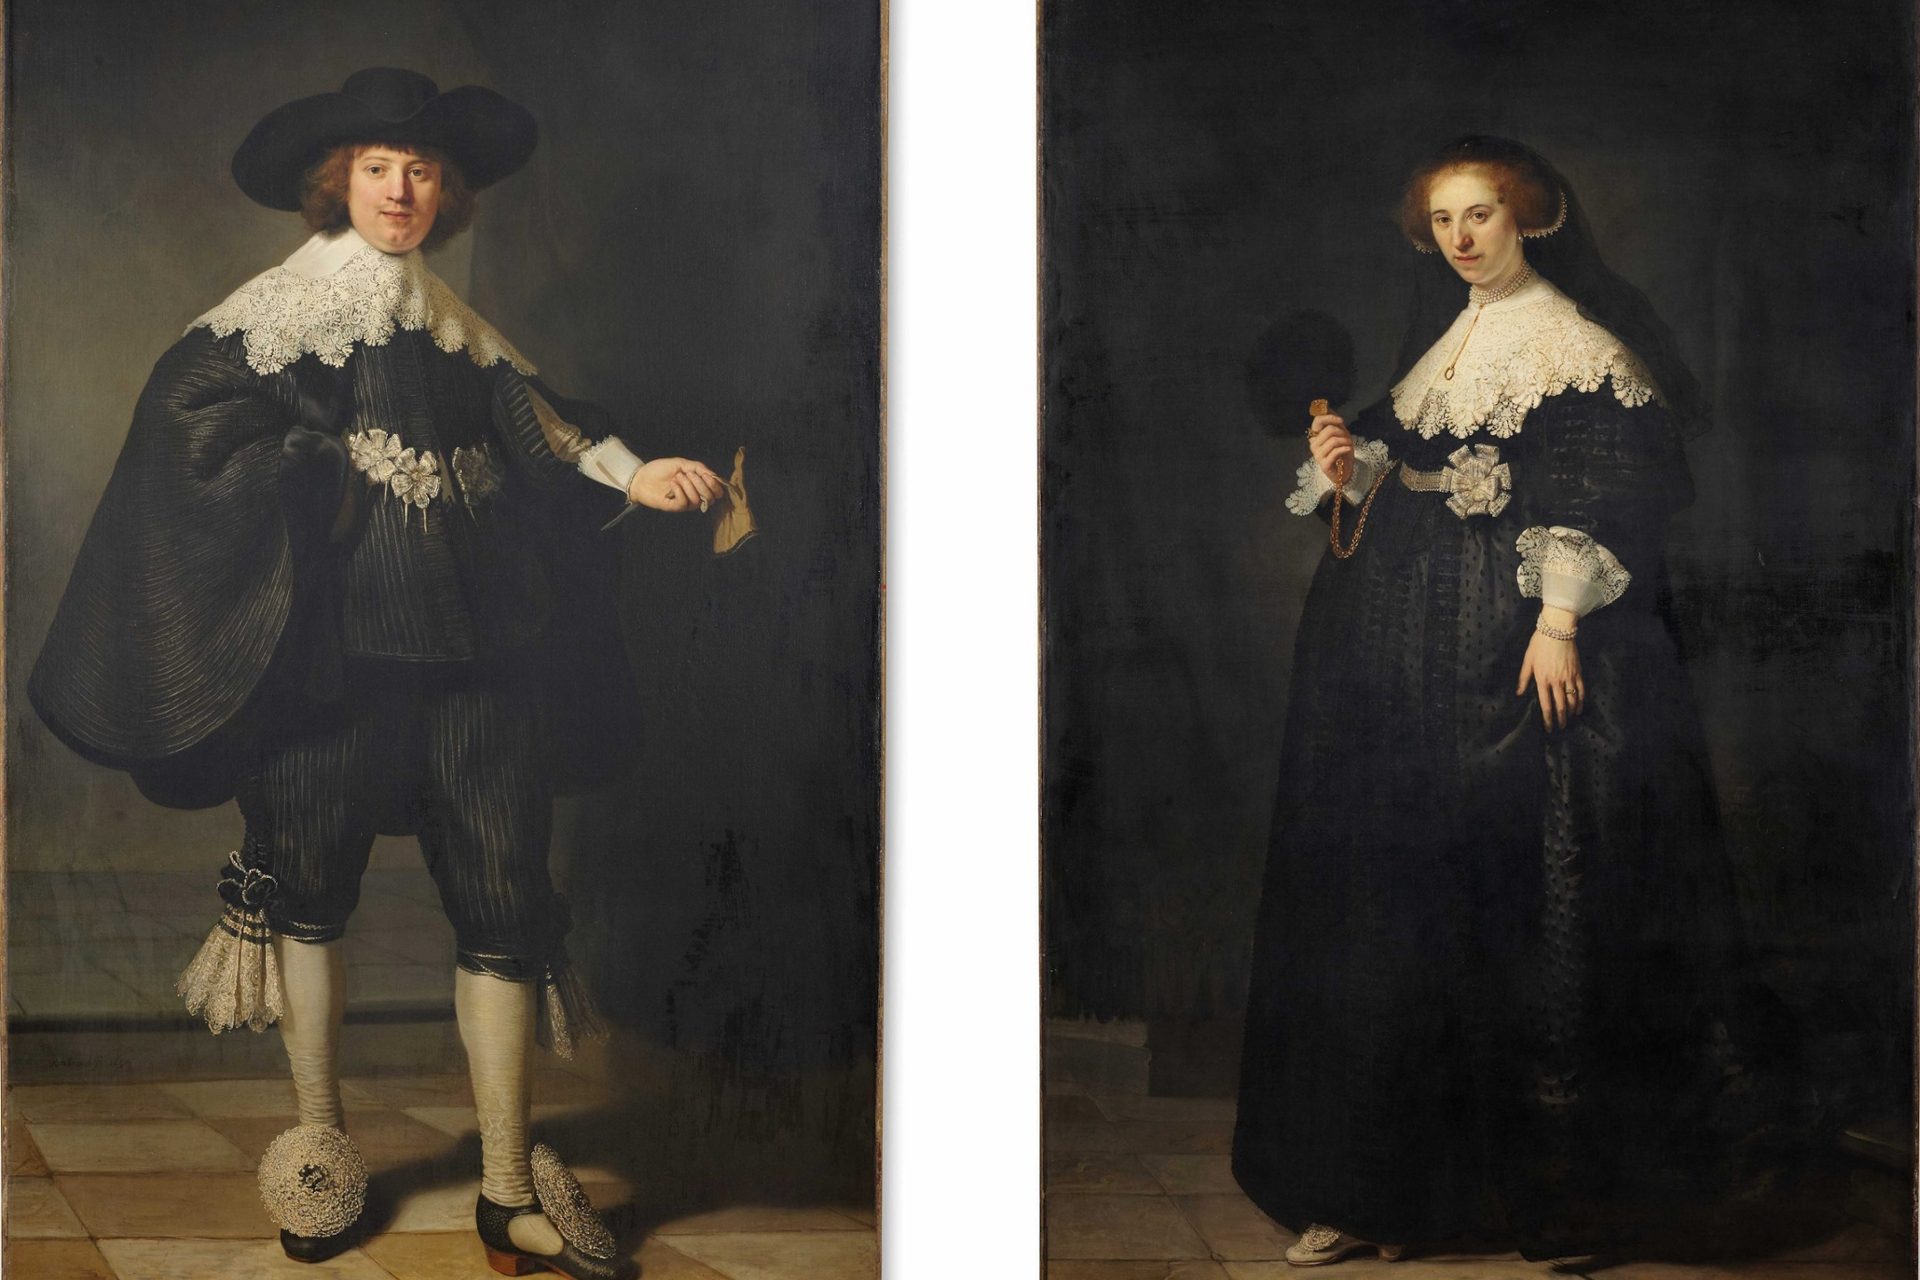 'Portraits de Maerten Soolmans et Oopjen Coppit', Rembrandt 